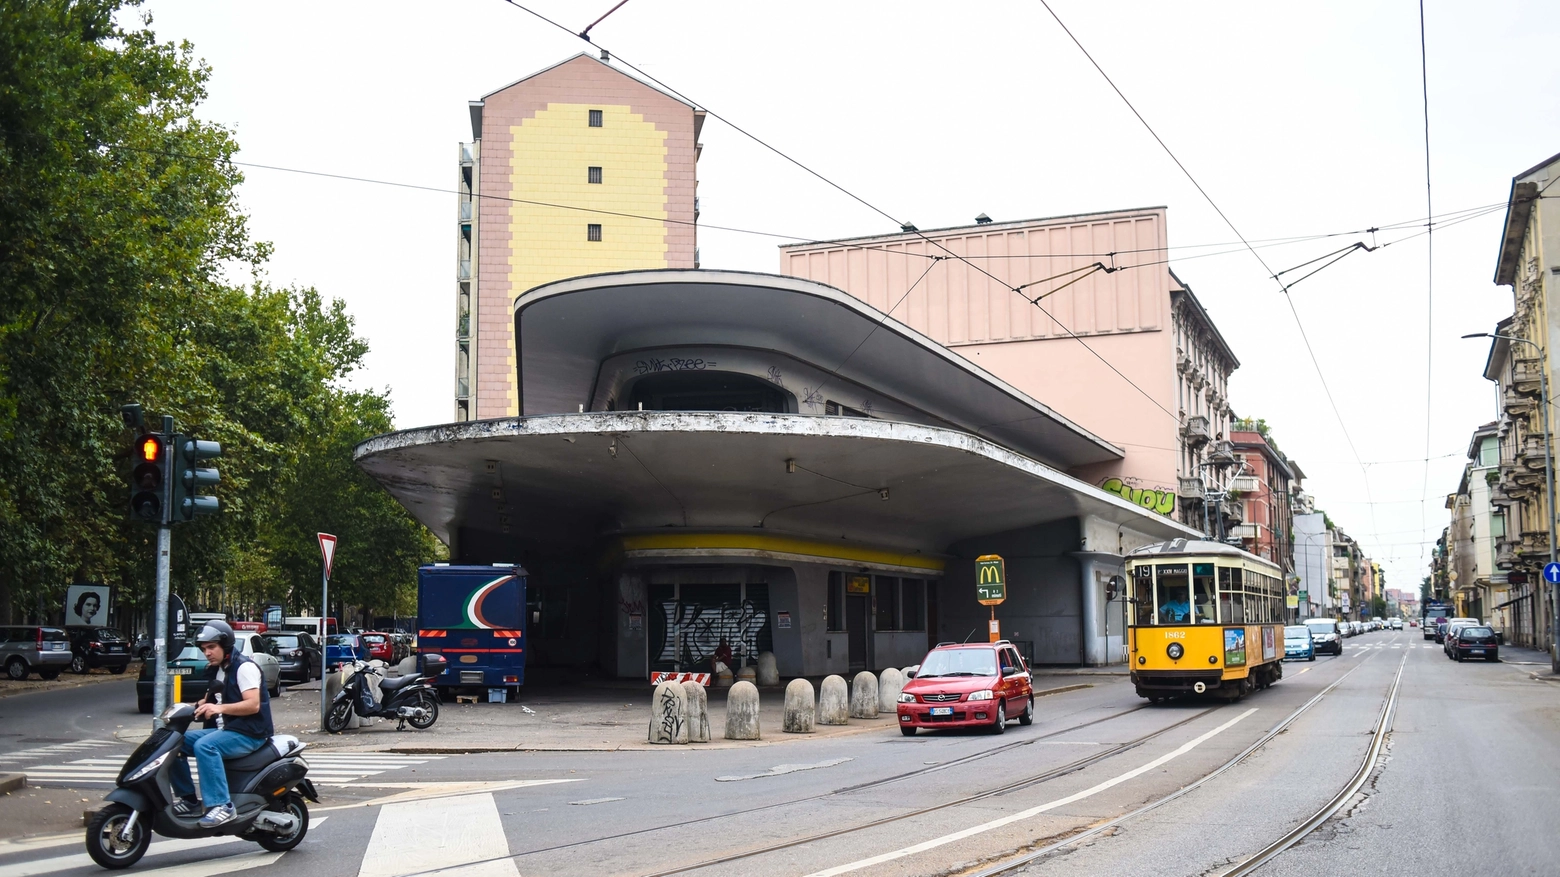 Ex stazione 'futurista' in piazzale Accursio a Milano